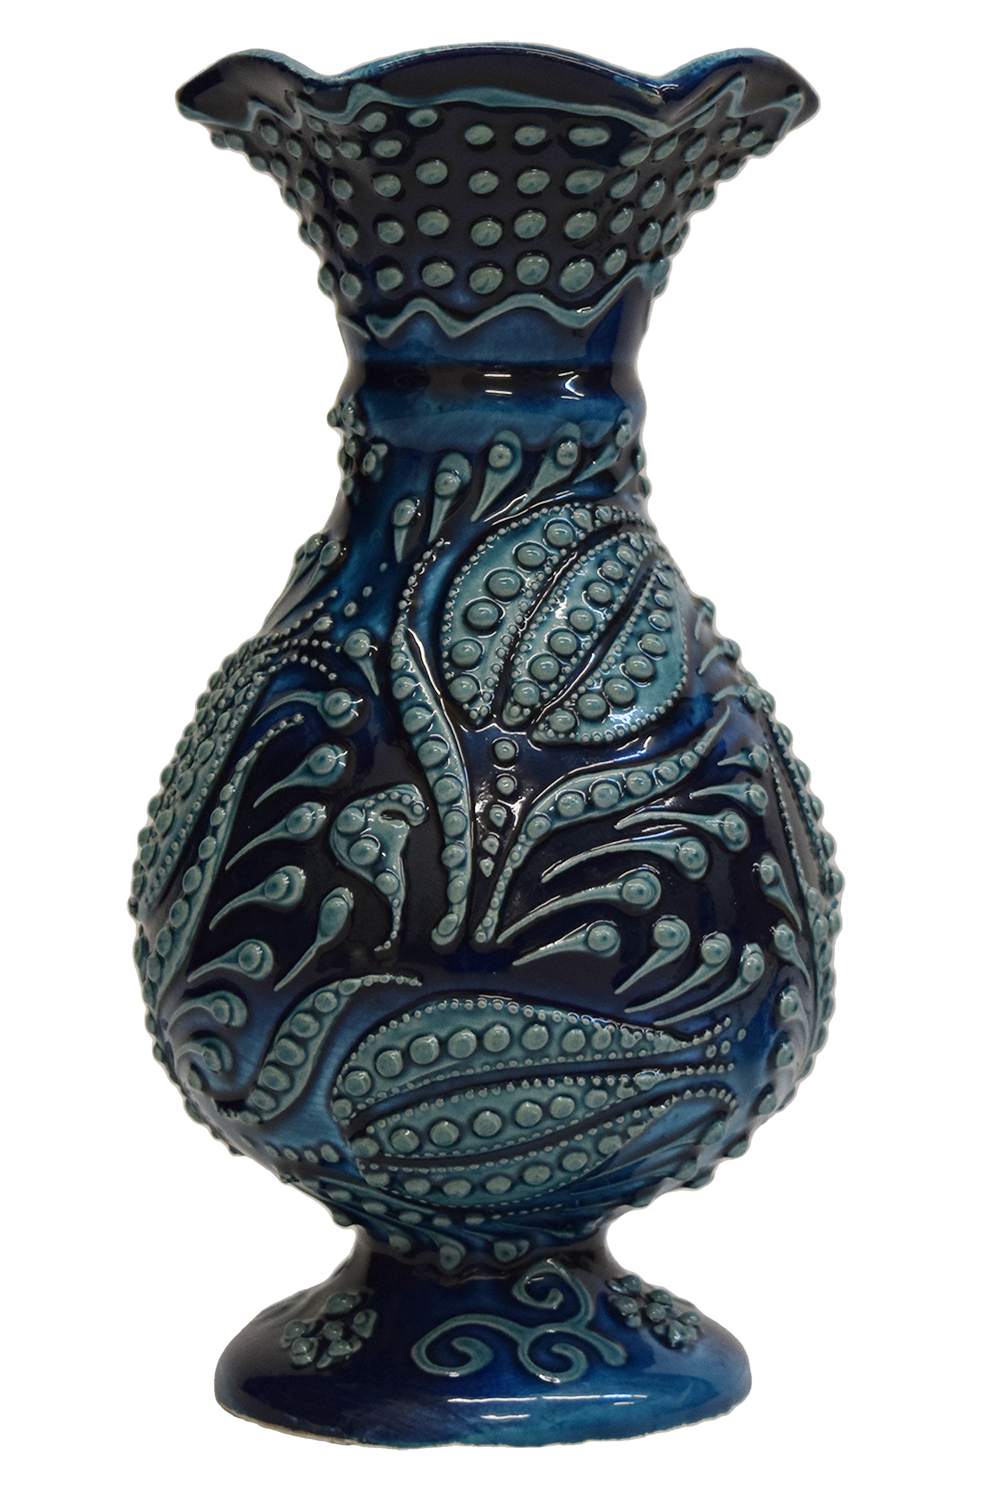 Regular Ceramic Vase 8″